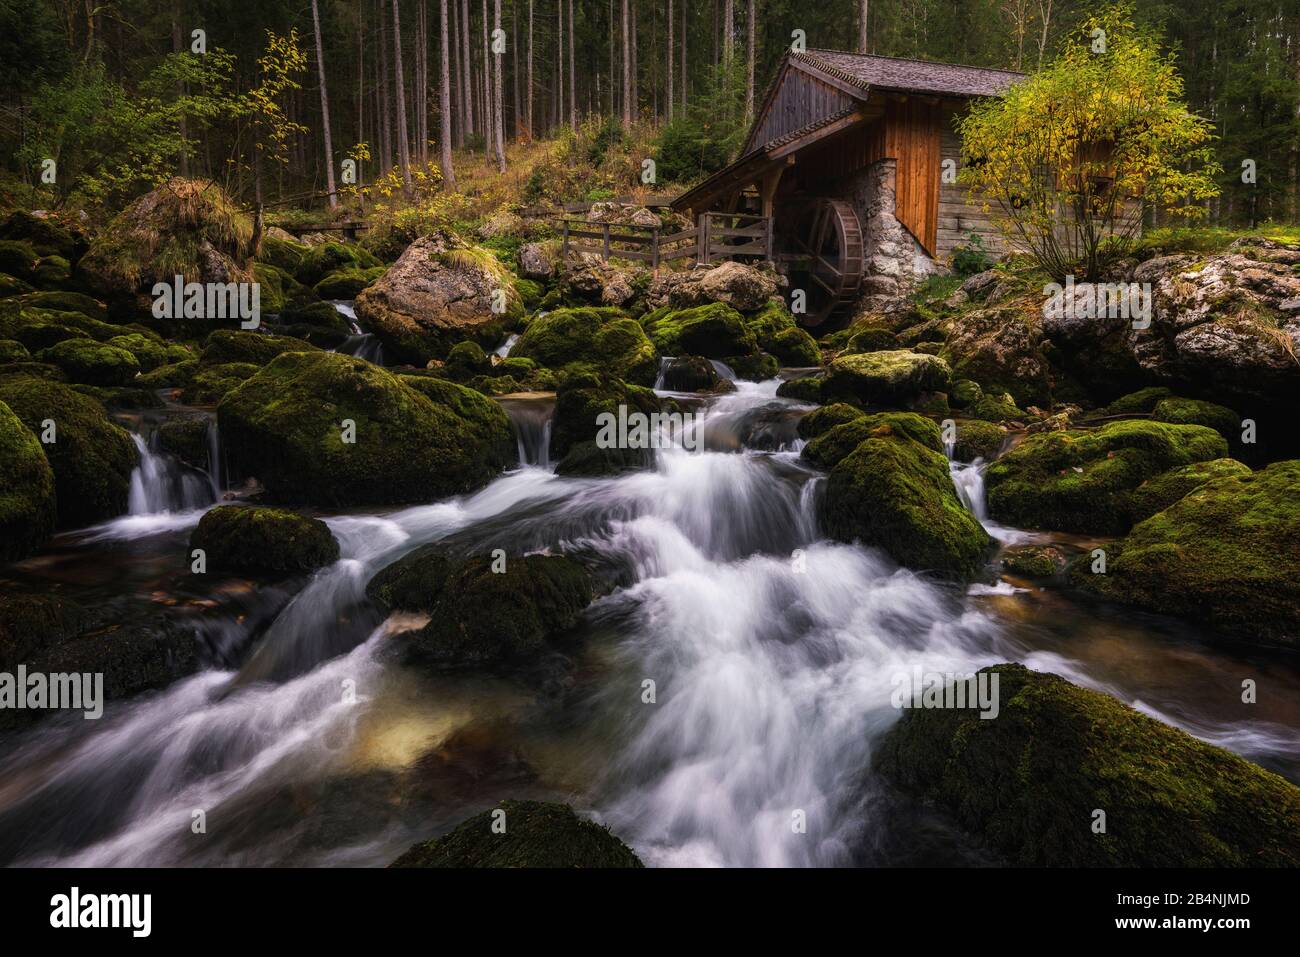 Mill at Gollinger Wasserfall, Salzburg, Austria Stock Photo